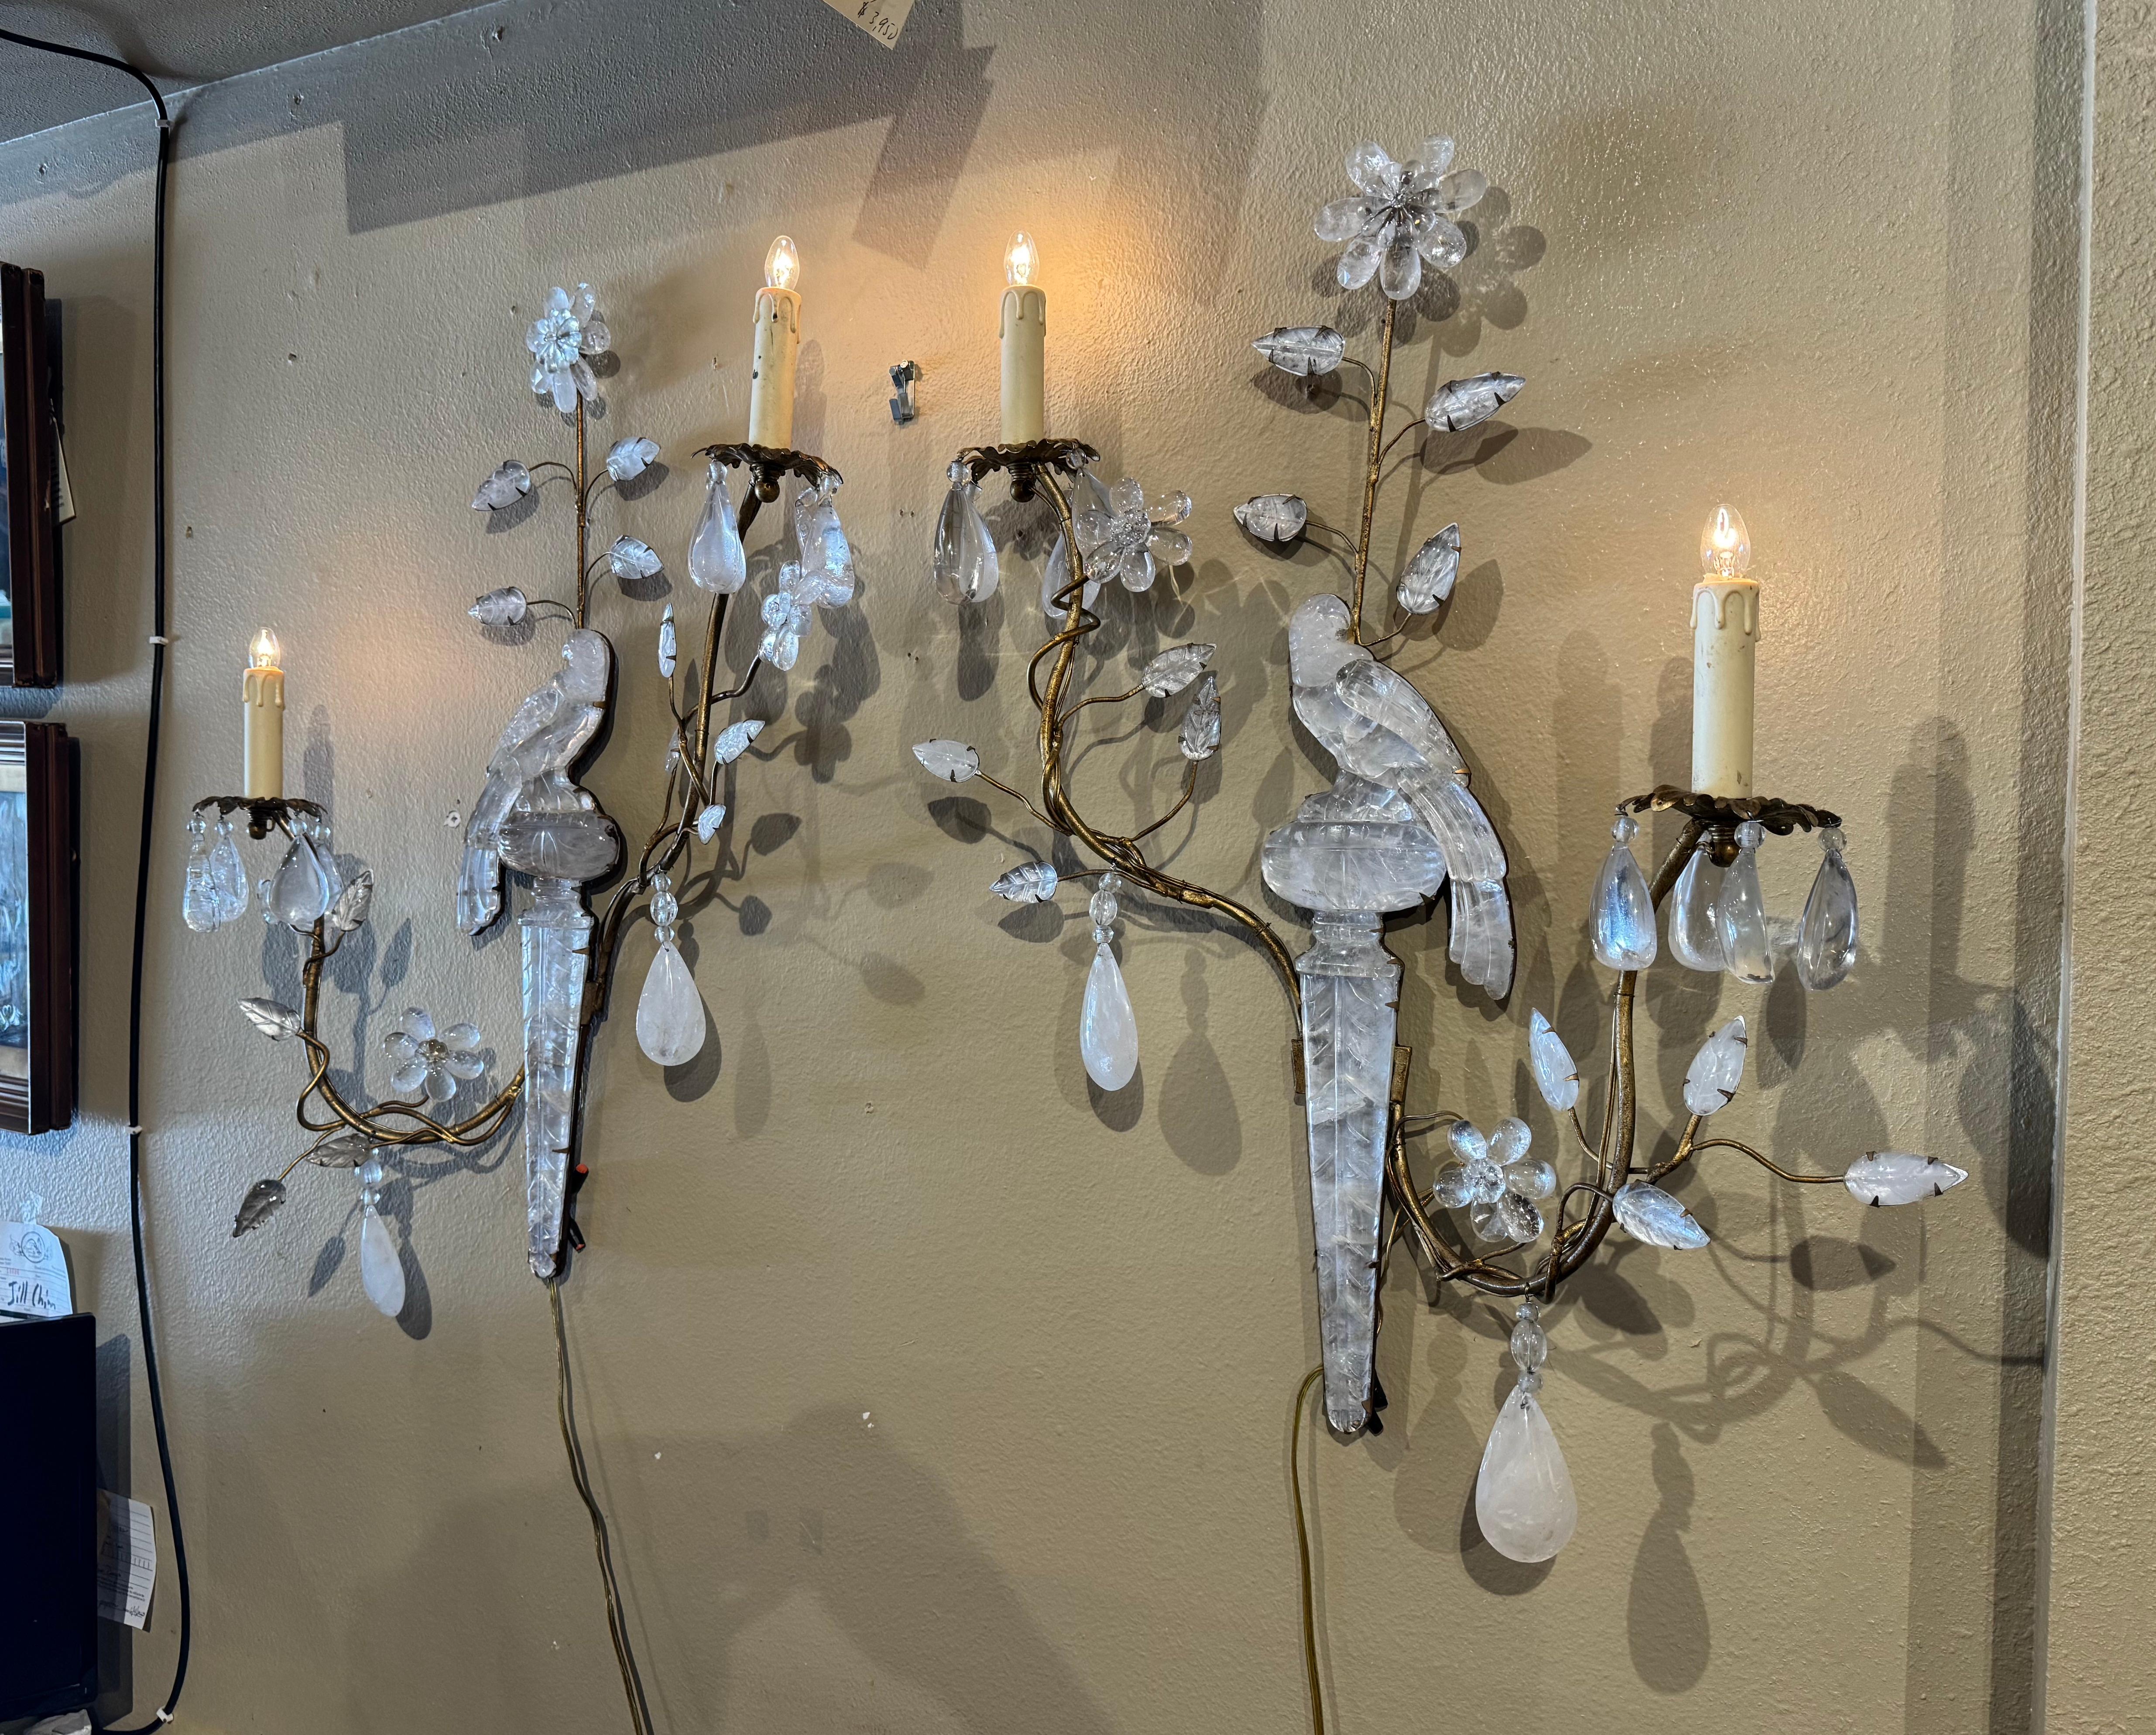 Ces élégantes appliques ont été créées en France vers 1960. Attribuée à la Maison Bagues, chaque applique à deux bras en métal est décorée d'un perroquet en cristal de roche perché sur une urne avec des fleurs et des feuilles en cristal. Les deux